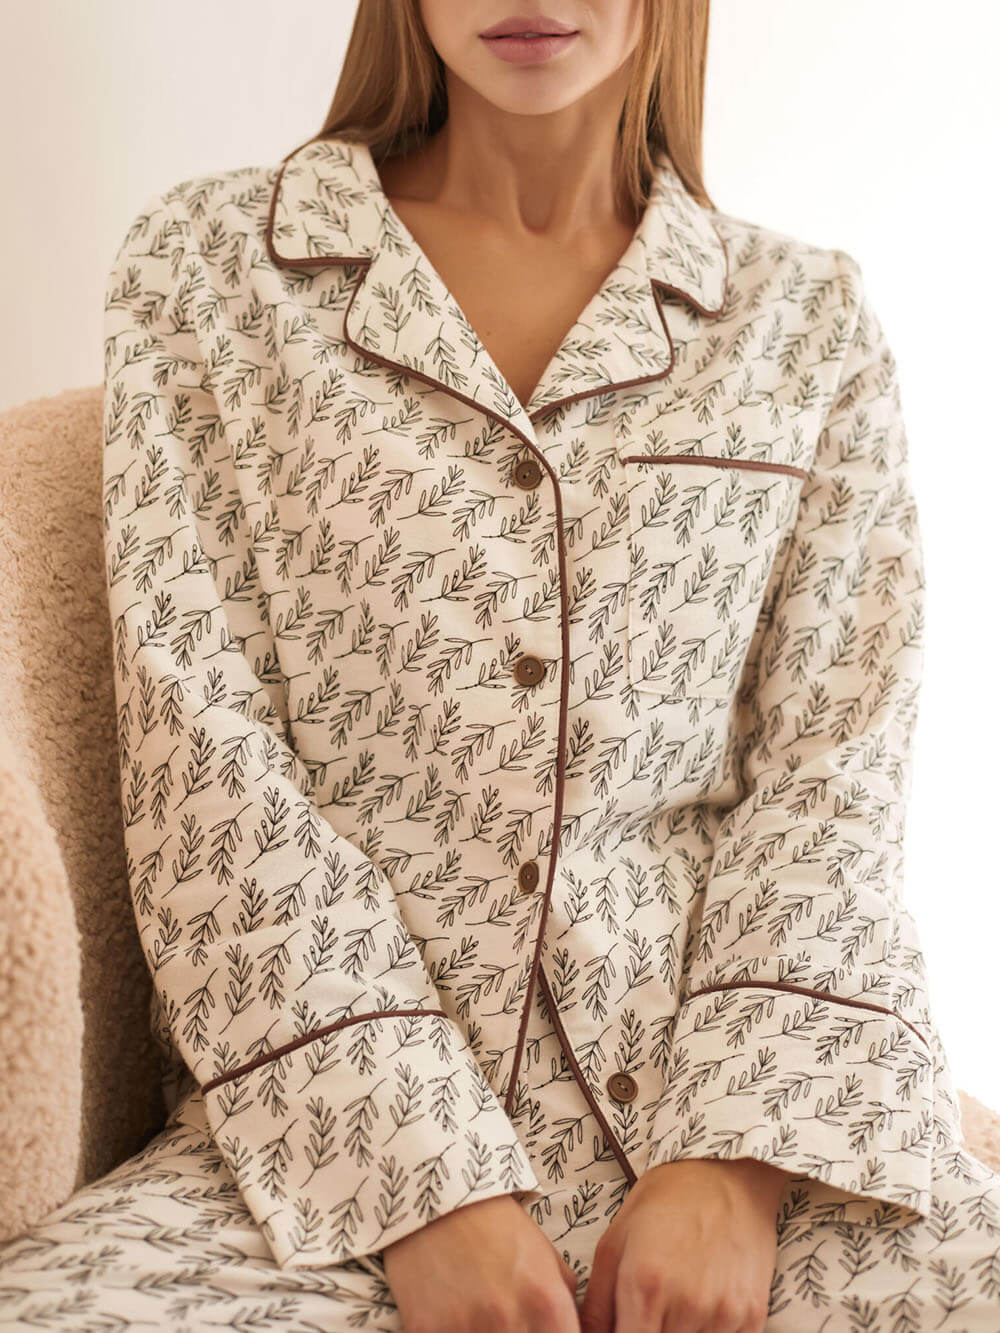 Losvallende pyjamaset met bruine rand en patchwork